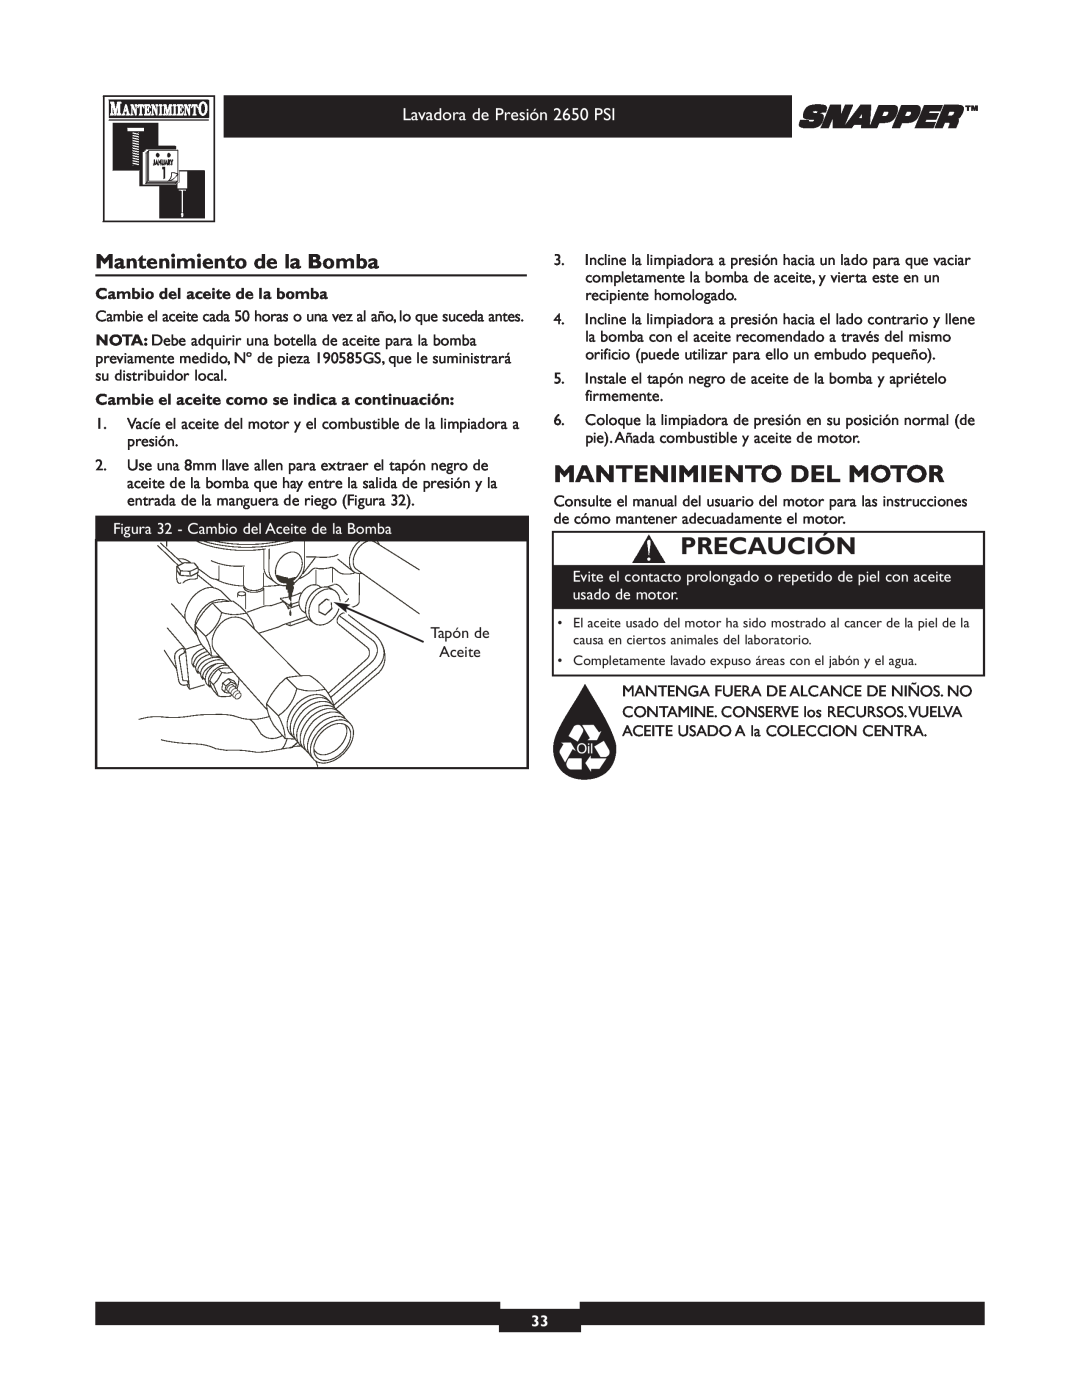 Snapper 020230 user manual Mantenimiento Del Motor, Mantenimiento de la Bomba, Precaución, Cambio del aceite de la bomba 